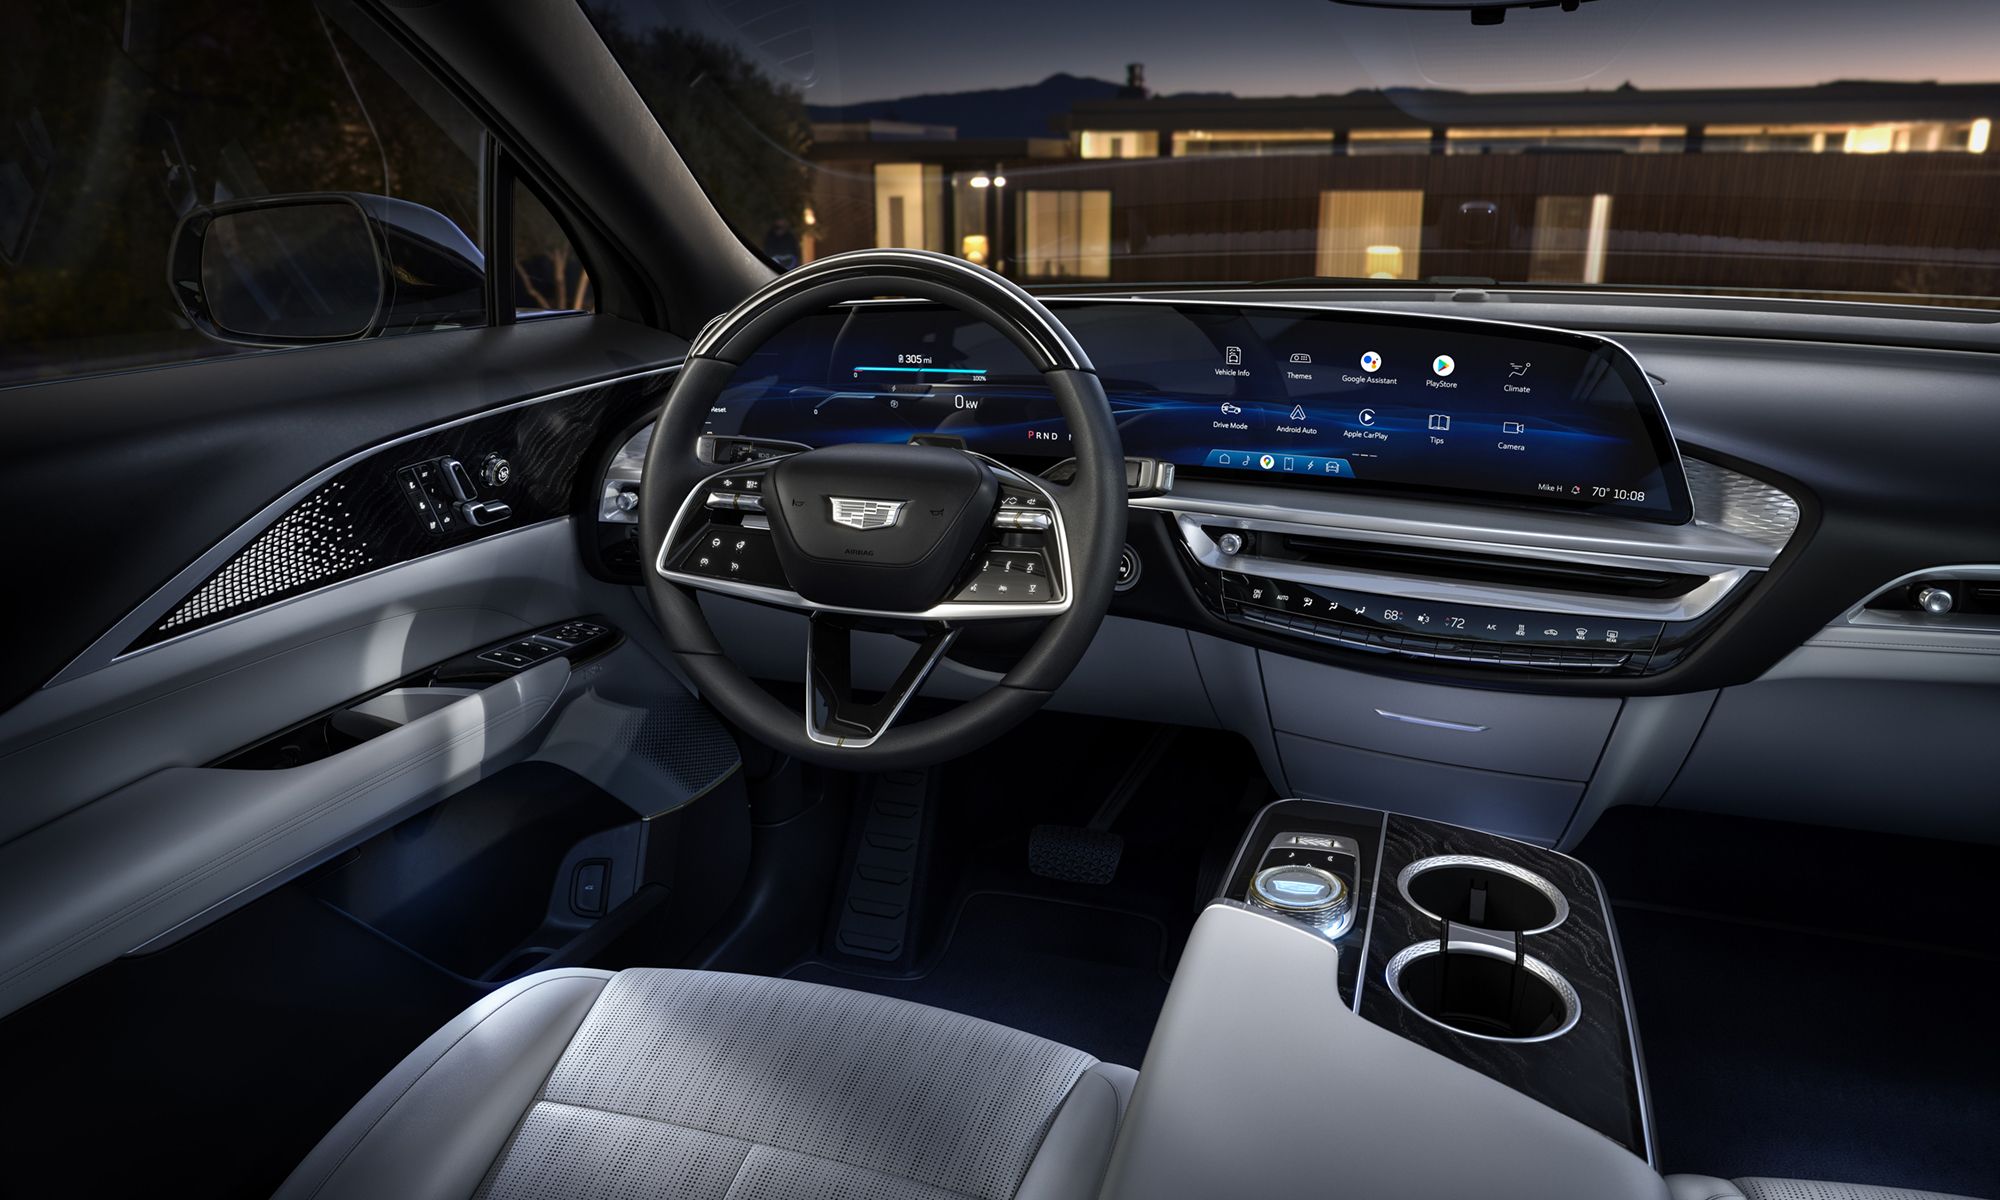 General Motors quiere que el usuario delegue funciones particulares en esta inteligencia artificial, como abrir la puerta del garaje.